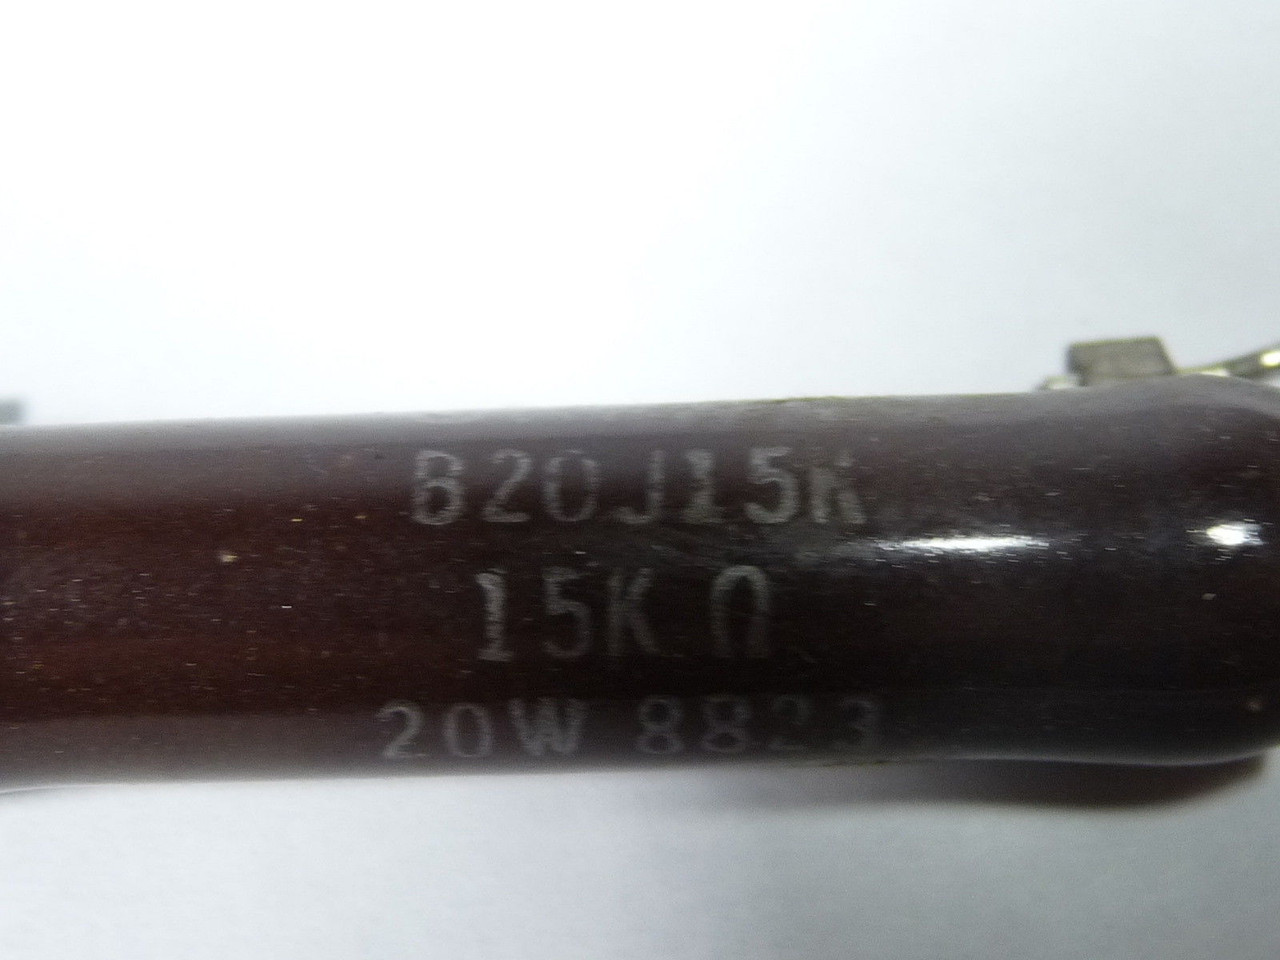 Ohmite B20J15KE Wire Wound Resistor 15000 Ohm 20W USED